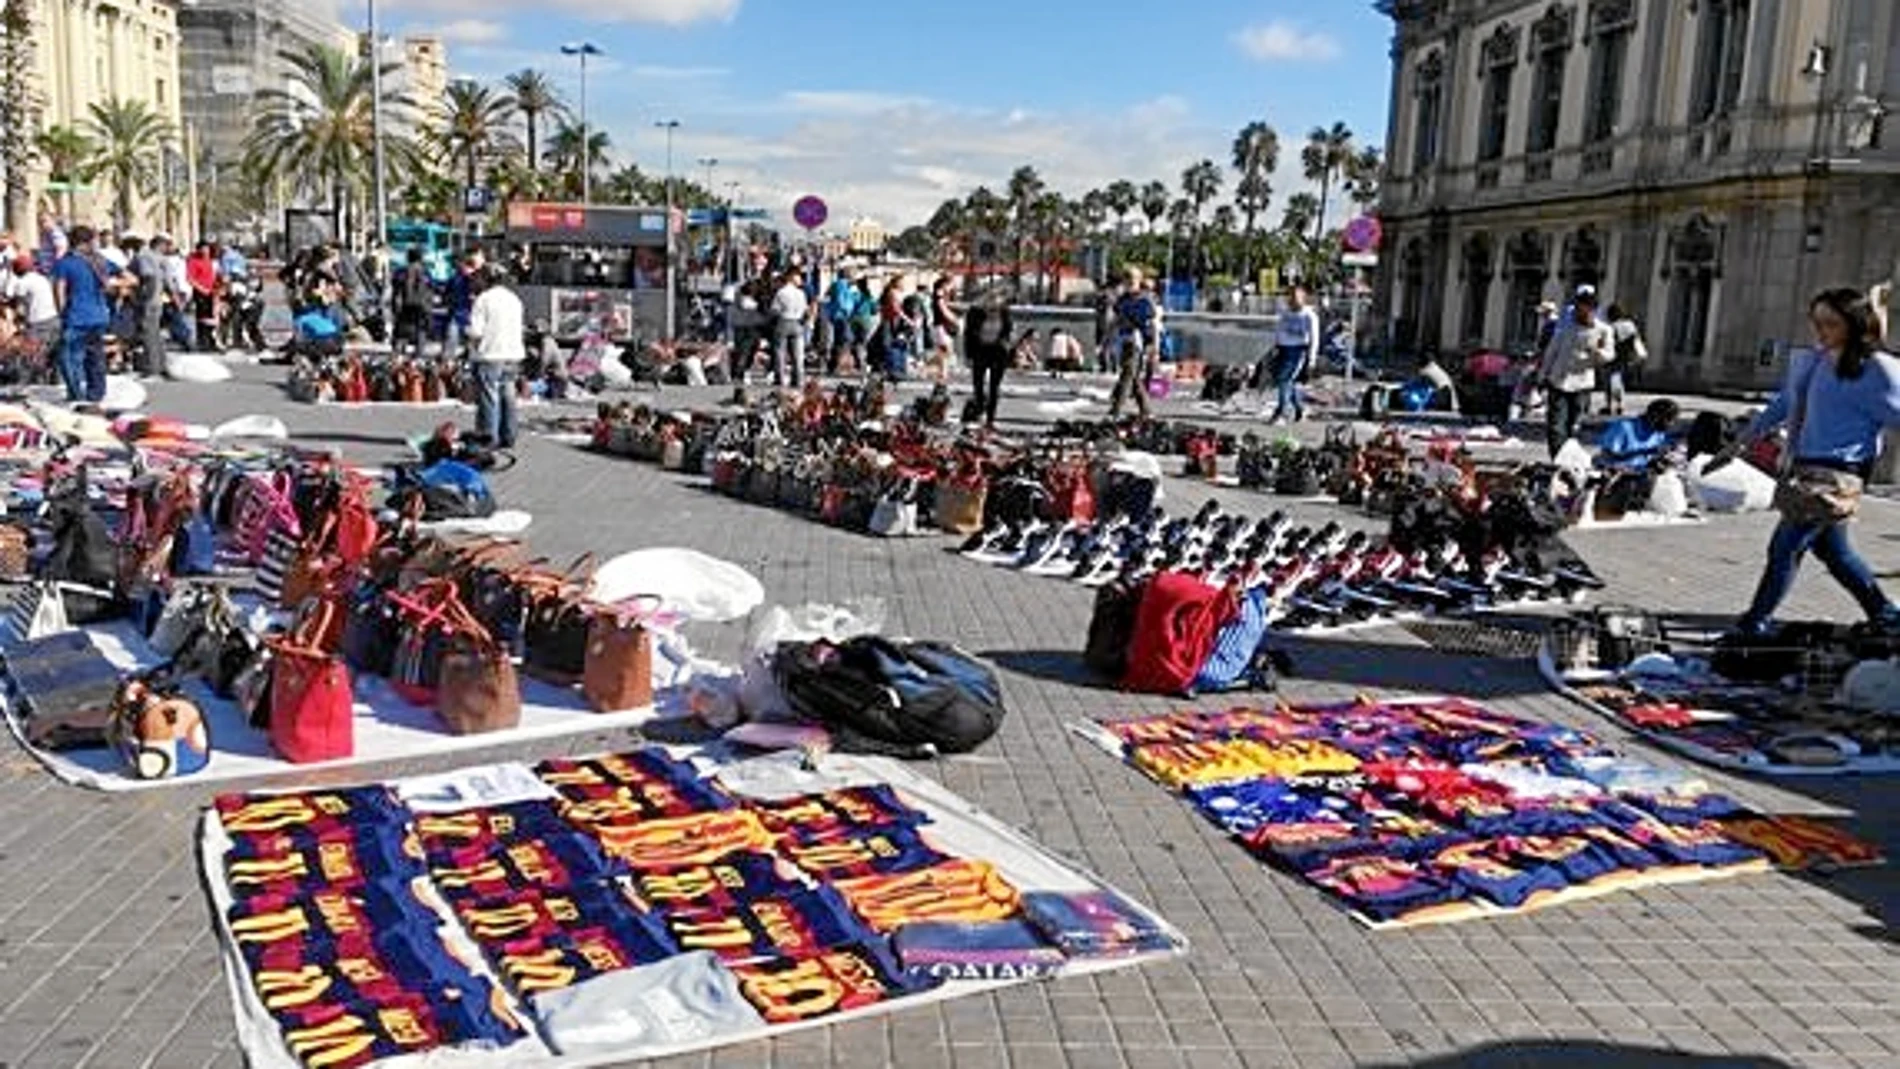 La presencia de manteros resurgió con fuerza este verano en la zona del puerto de Barcelona